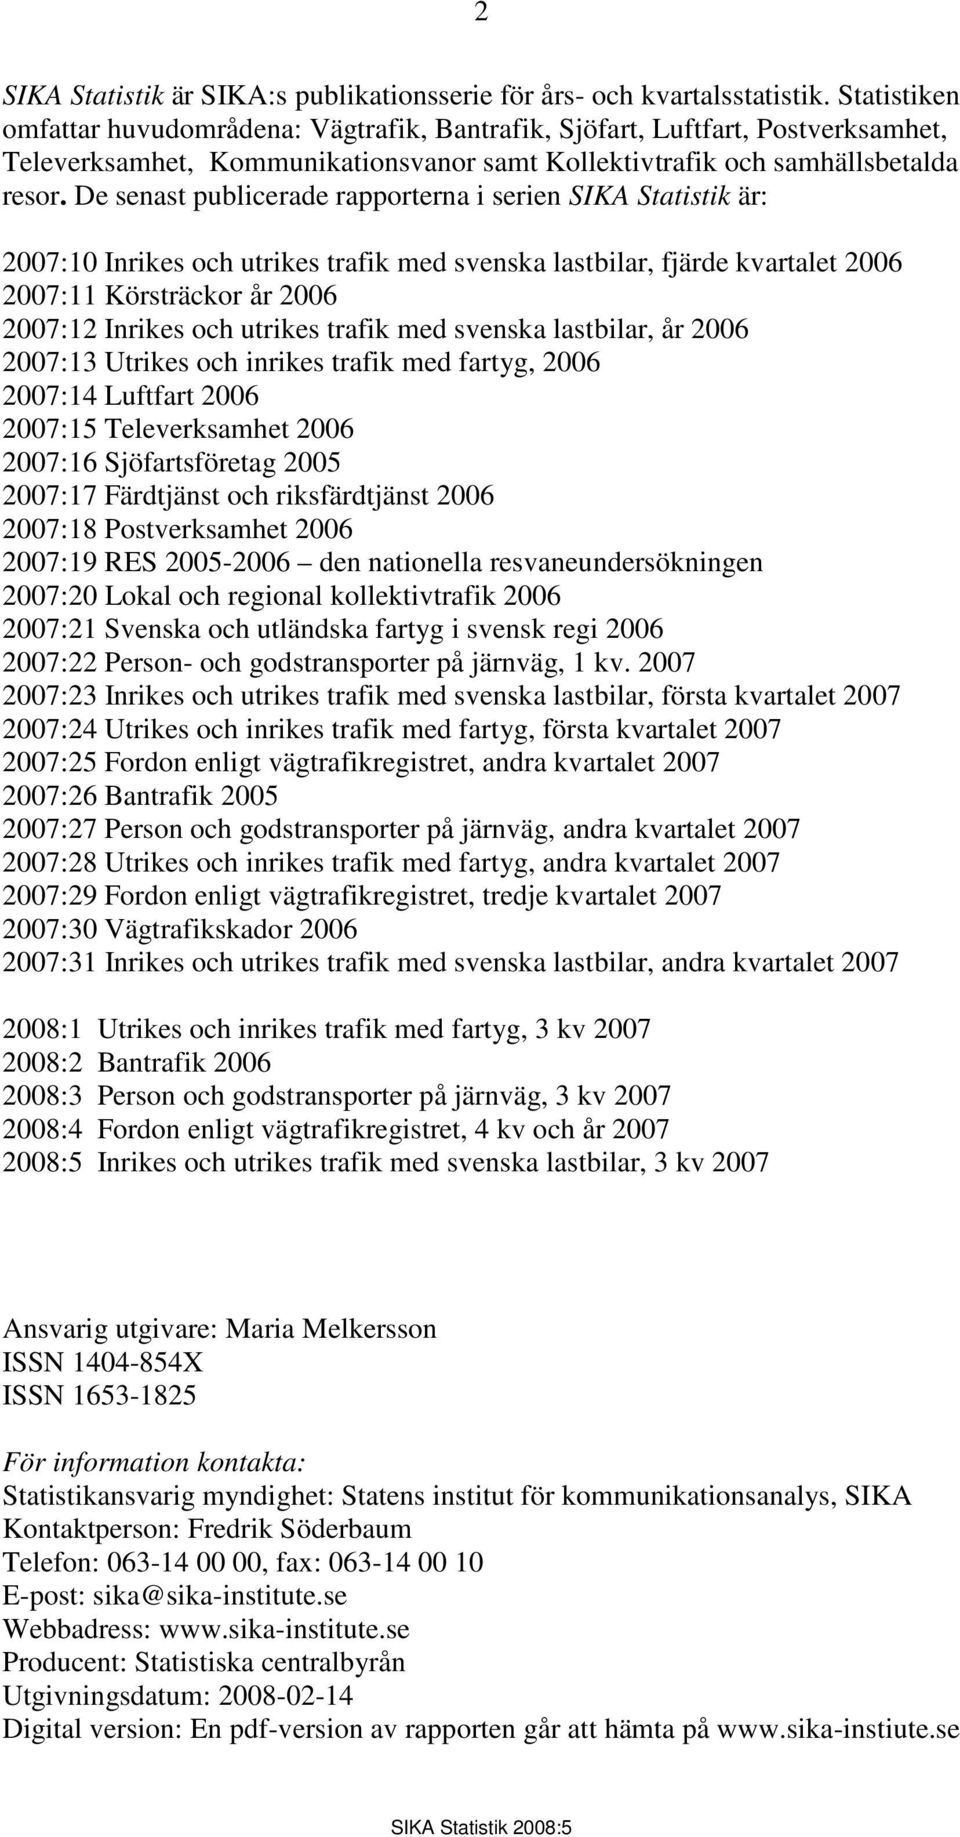 De senast publicerade rapporterna i serien SIKA Statistik är: 2007:10 Inrikes och utrikes trafik med svenska lastbilar, fjärde kvartalet 2006 2007:11 Körsträckor år 2006 2007:12 Inrikes och utrikes